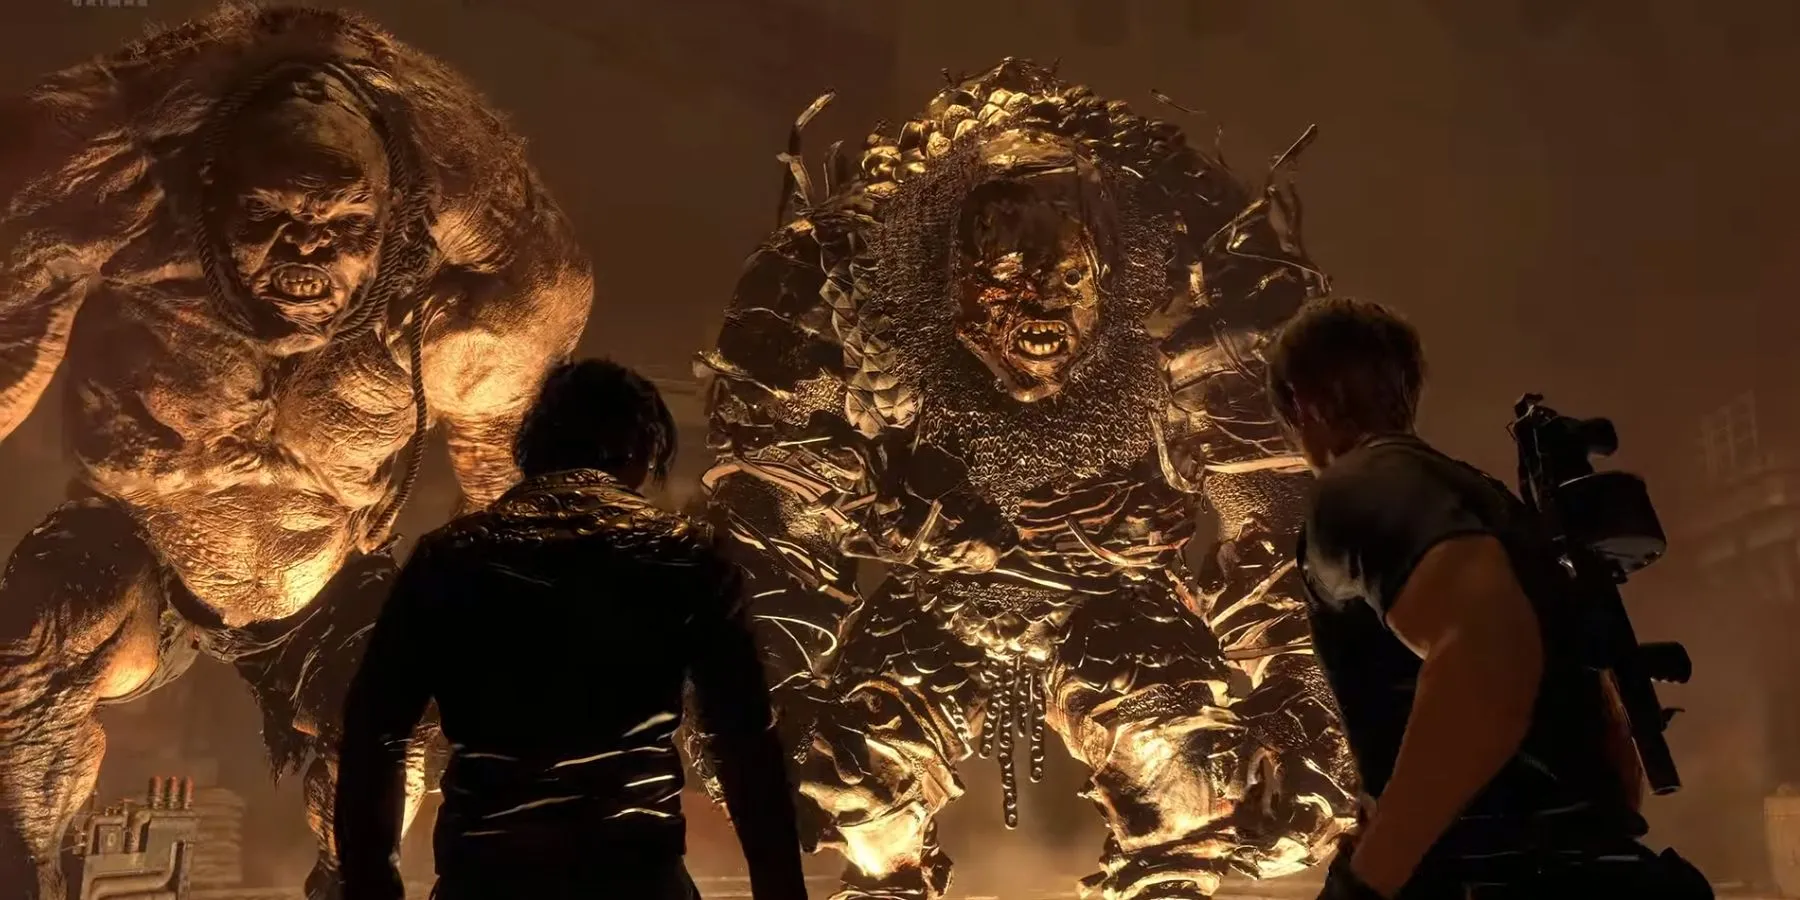 immagine che mostra i due giganti (dos gigante) nel remake di Resident Evil 4